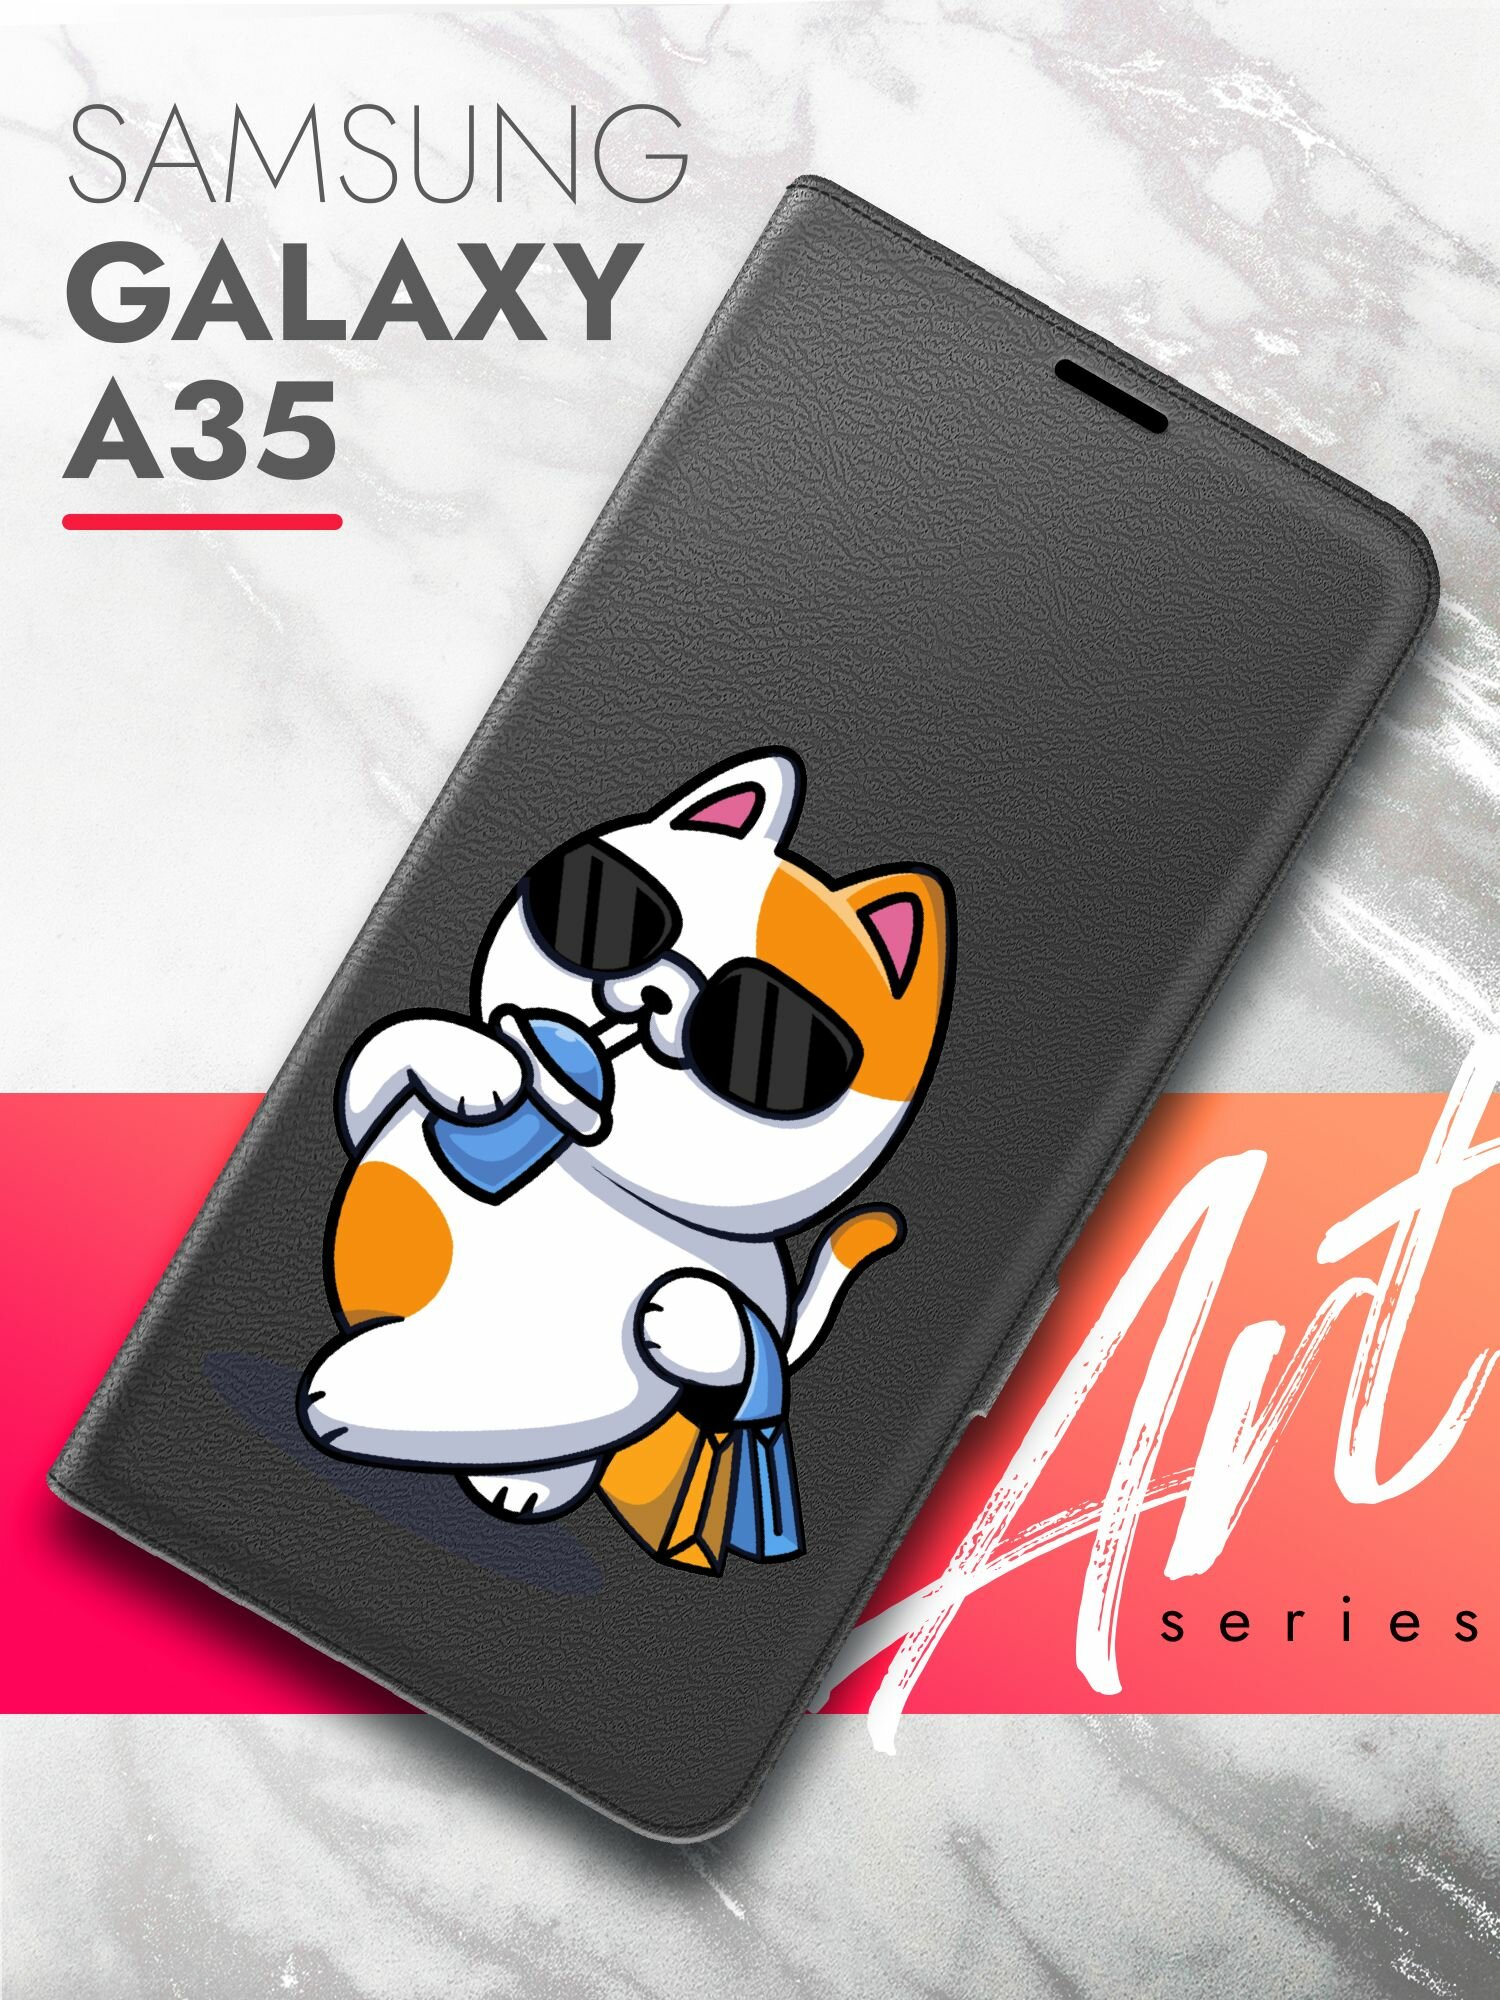 Чехол на Samsung Galaxy A35 (Самсунг Галакси А35) черный книжка эко-кожа подставка отделение для карт магнит Book case, Brozo (принт) Котик пьет